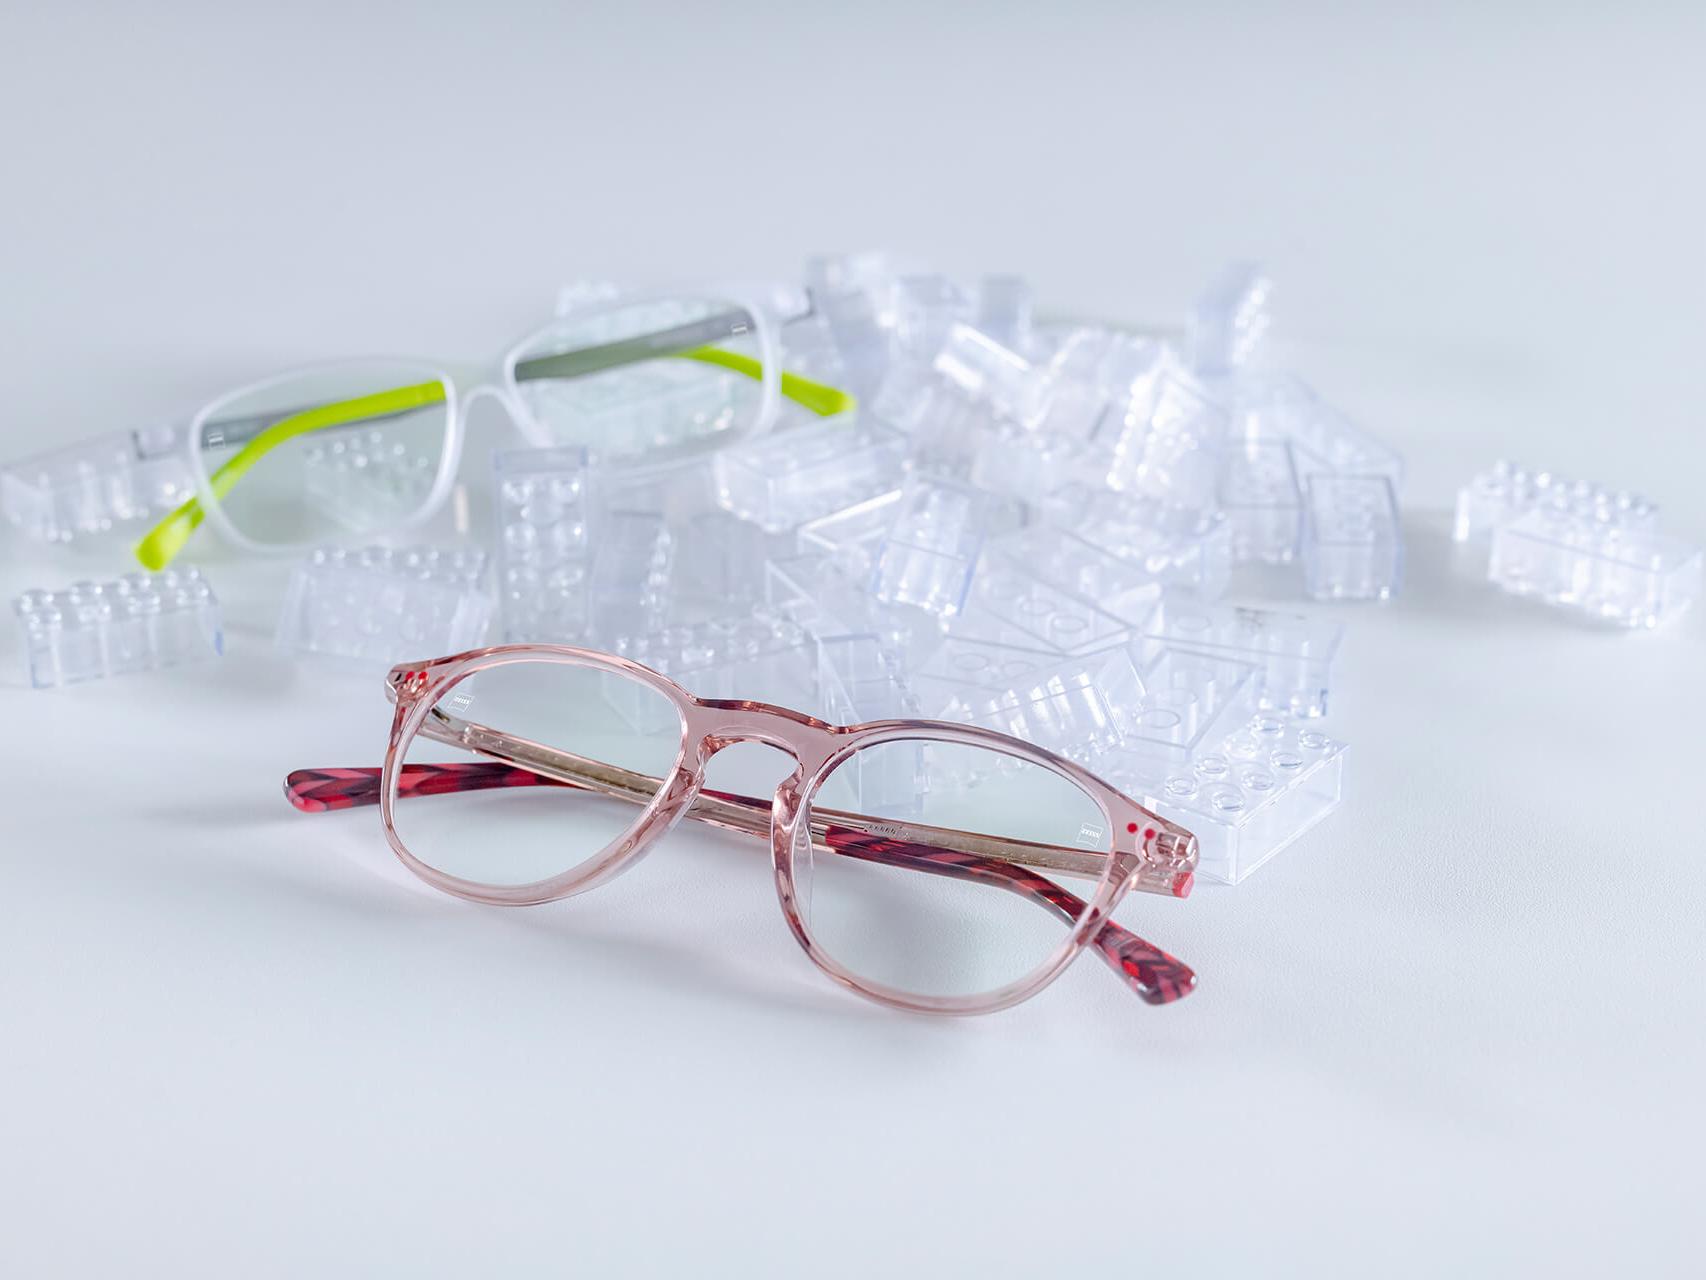 Dois pares de óculos infantis com lentes ZEISS e tratamento DuraVision® para crianças. Os óculos estão posicionados entre blocos de brinquedo transparentes.